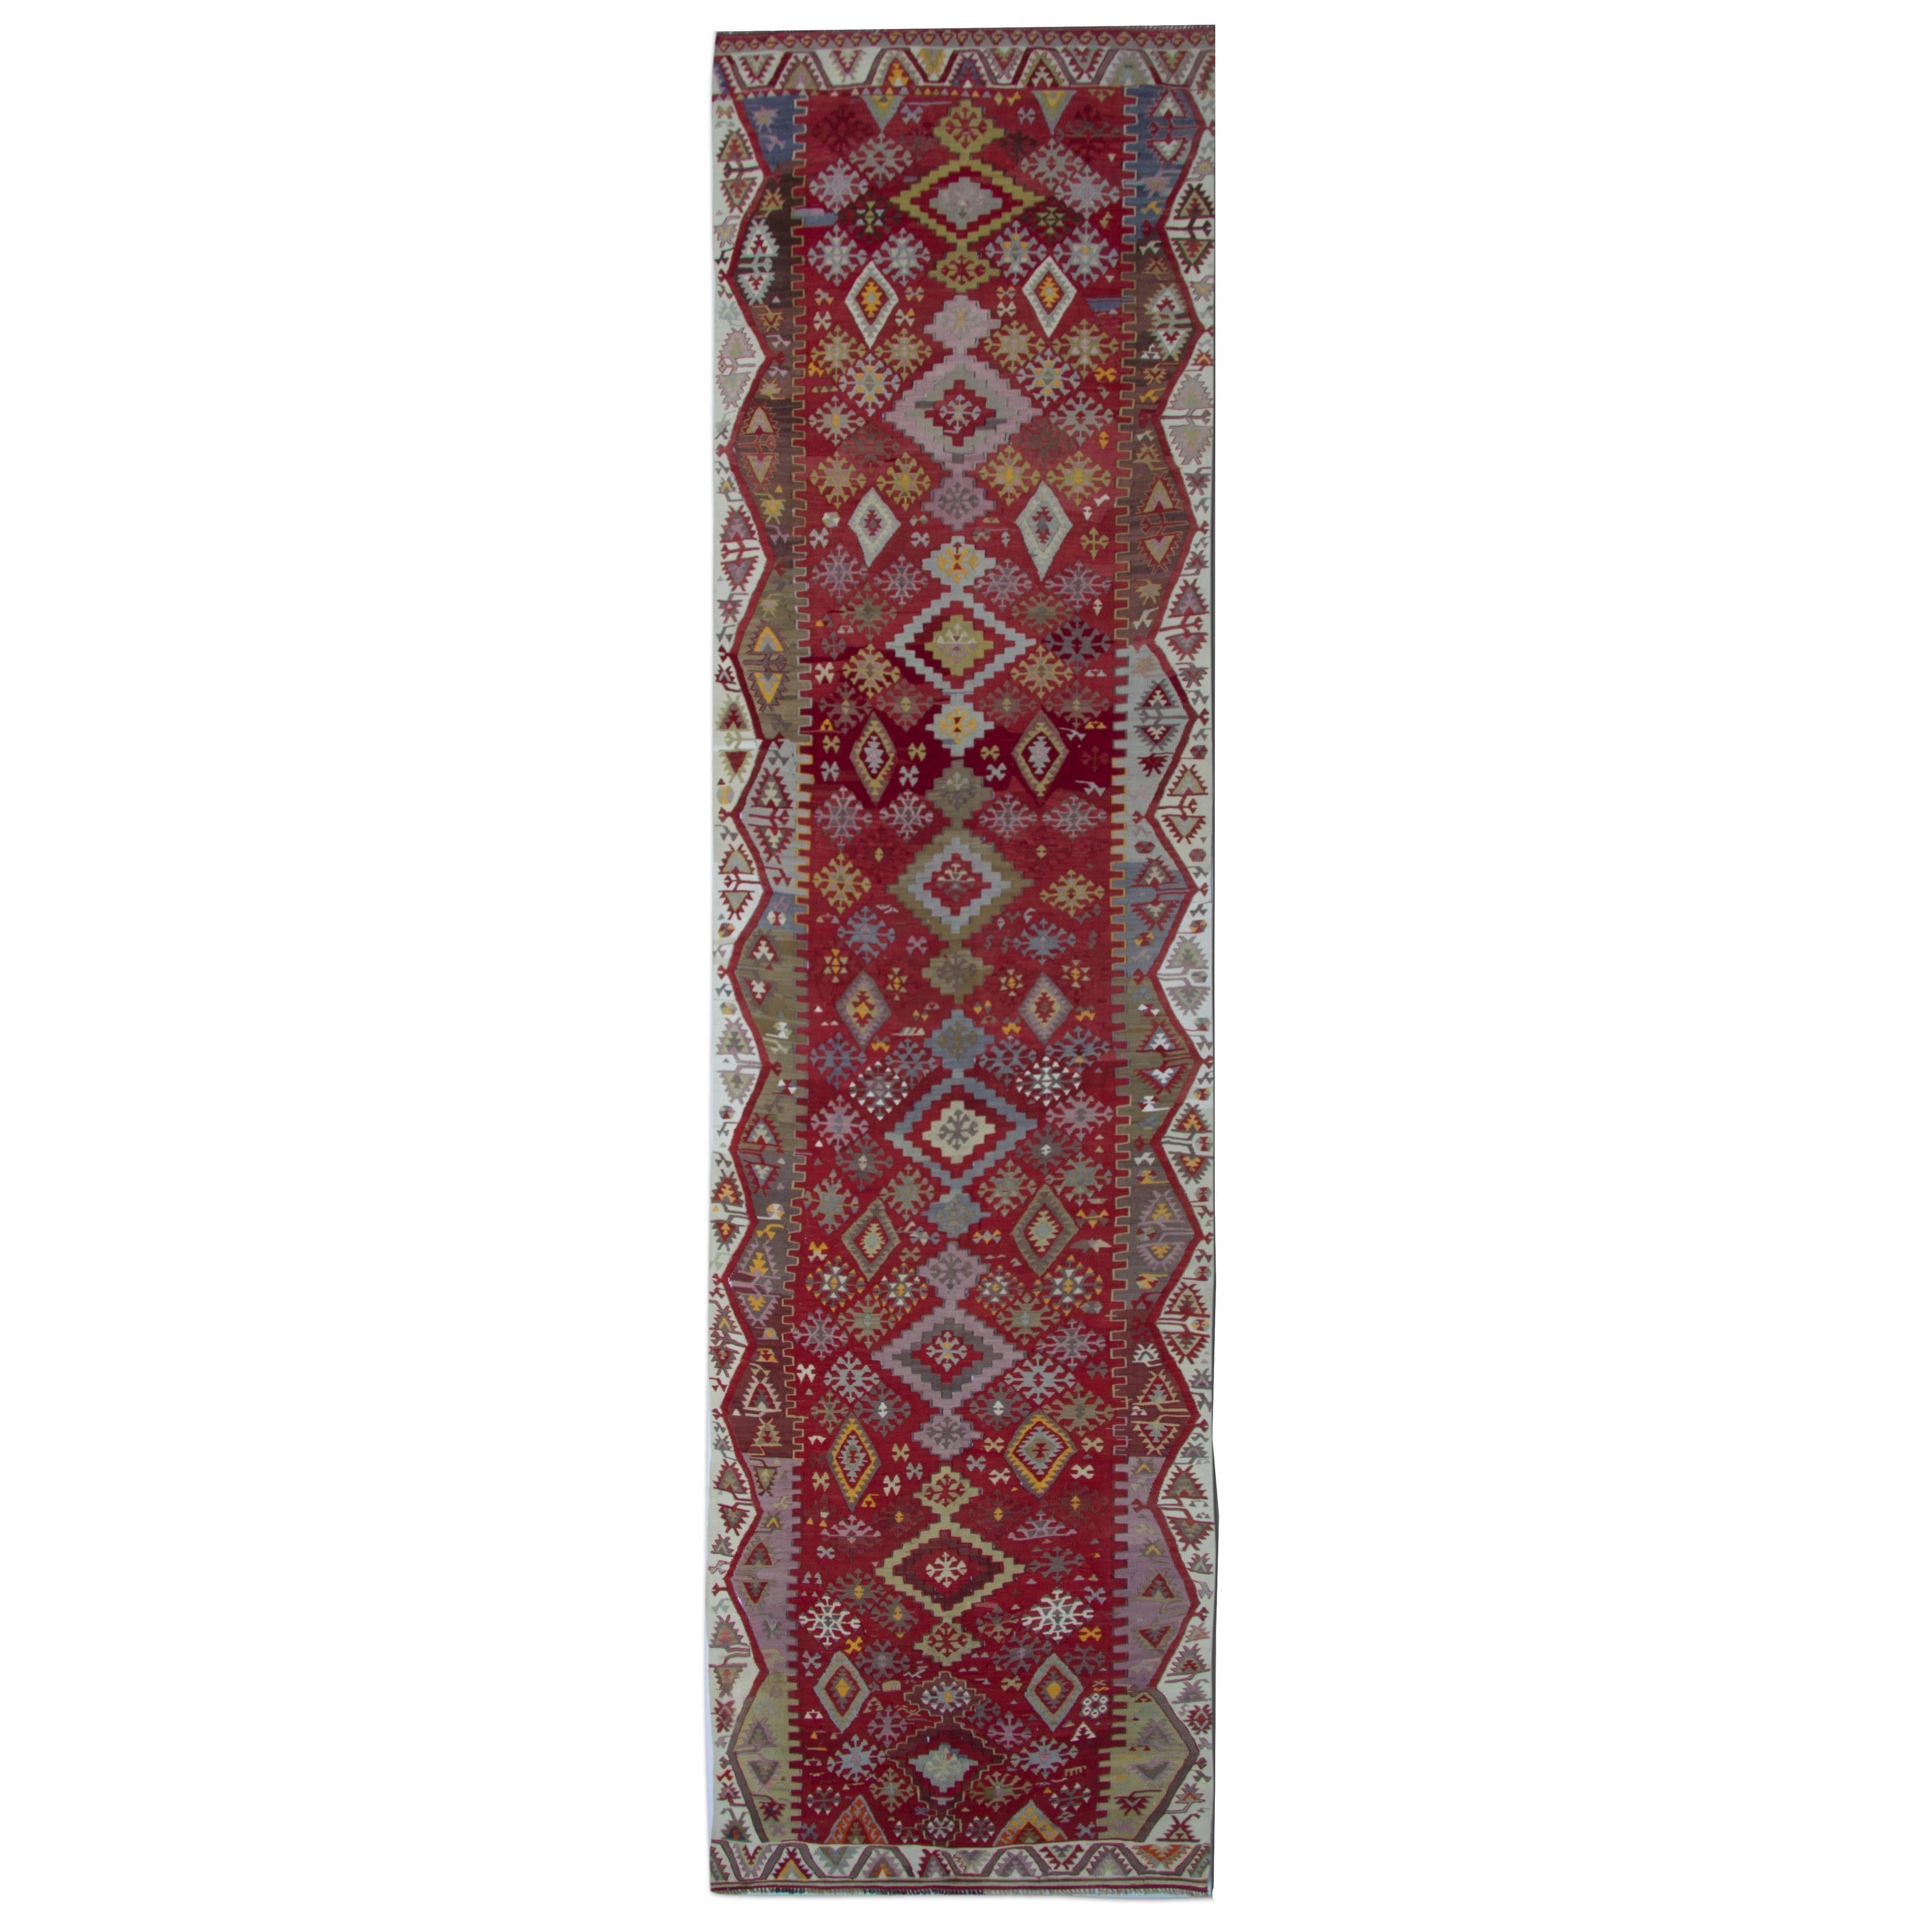 Handmade Carpet Antique Rugs Turkish Kilim Runner, Stair Runners Oriental Rugs